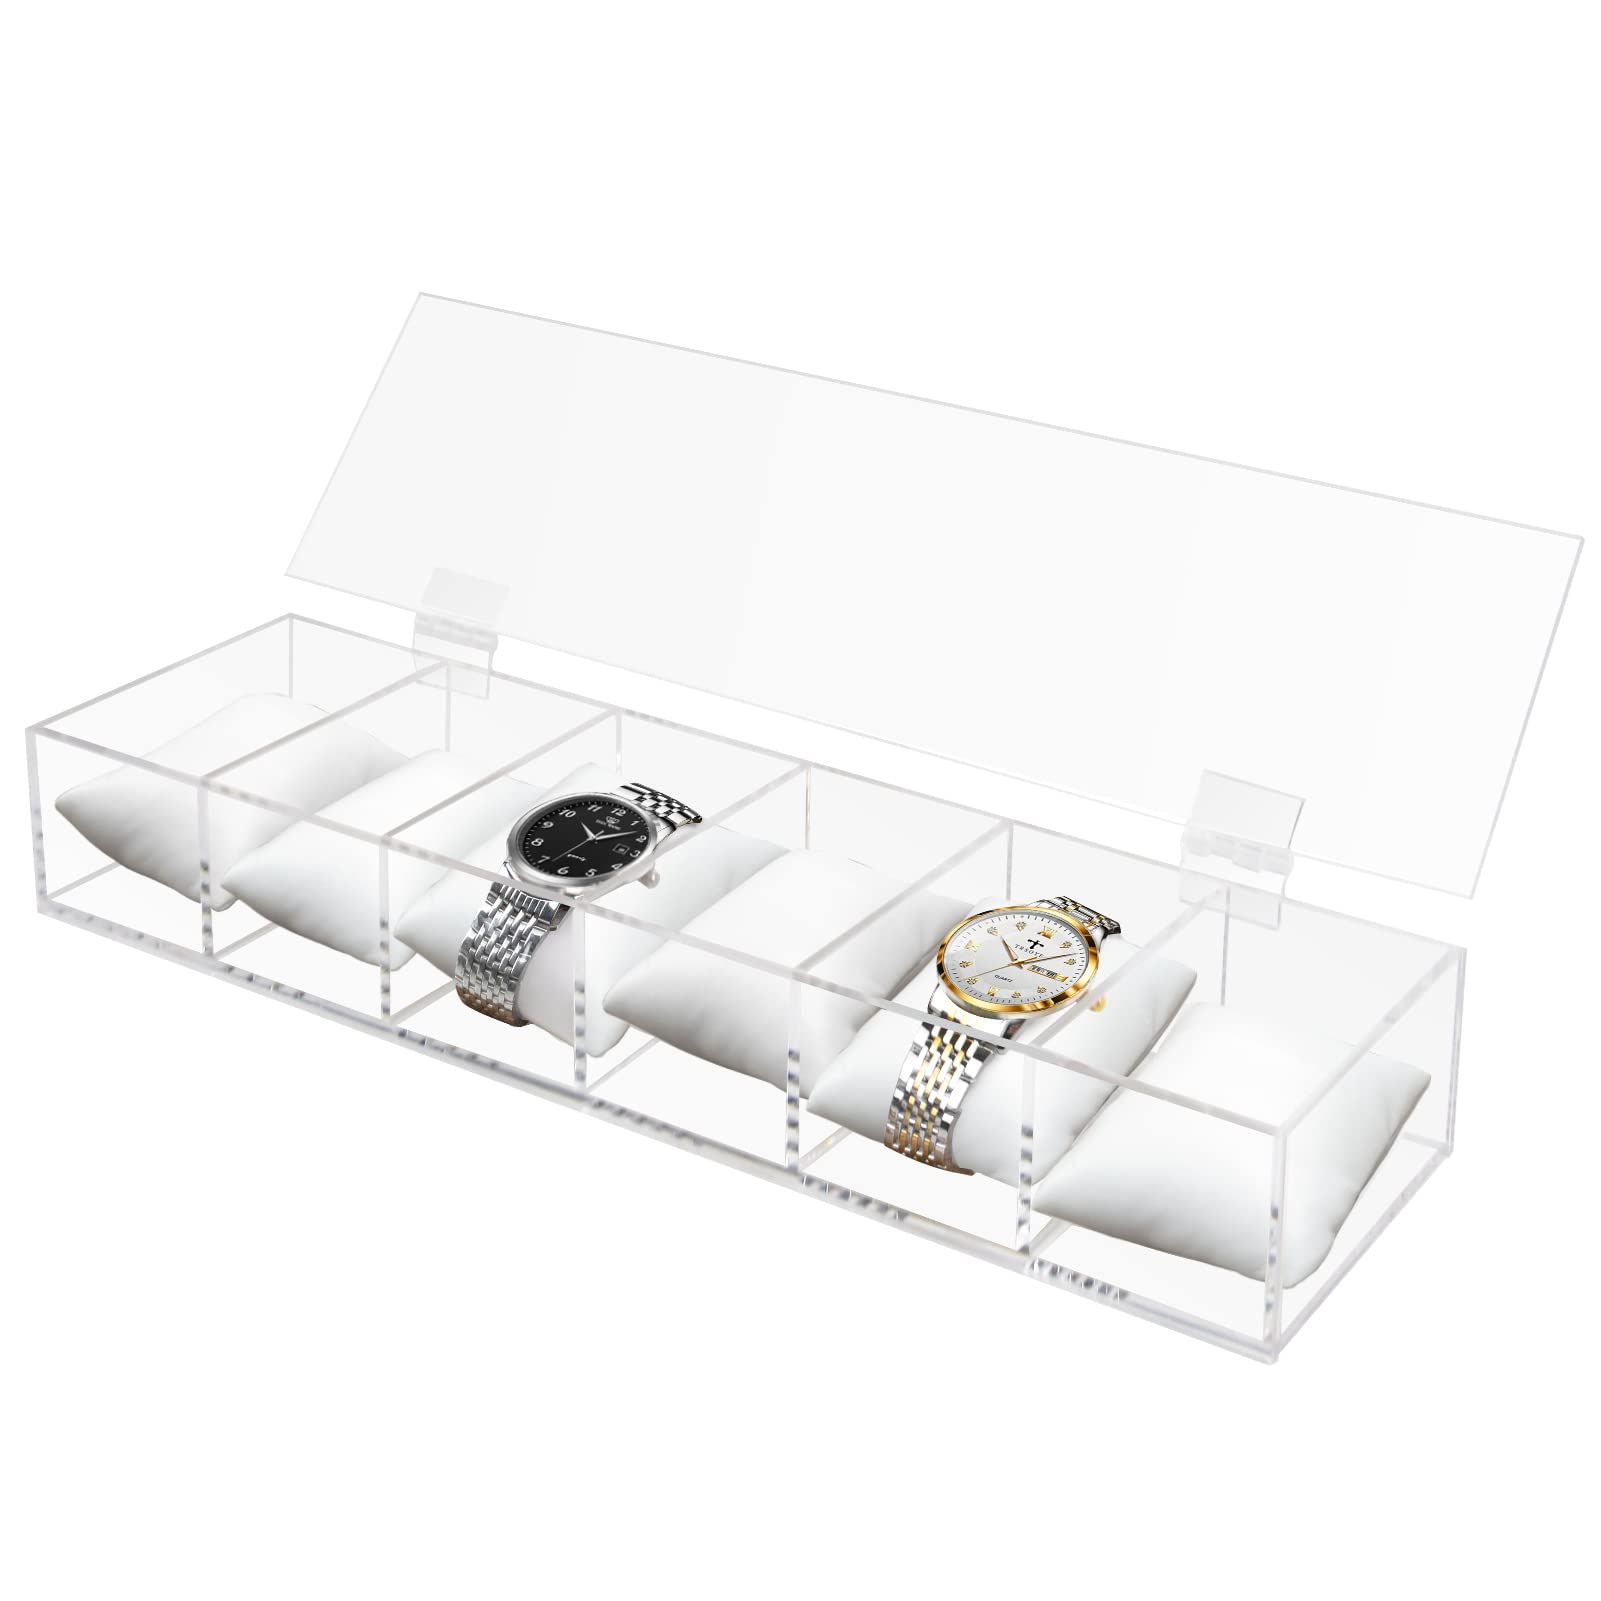 Ptaedex Watch Box Organizer for Men Women, 6 Slot Acrylic Watch Holder Display Case Organizer Jewelry Storage